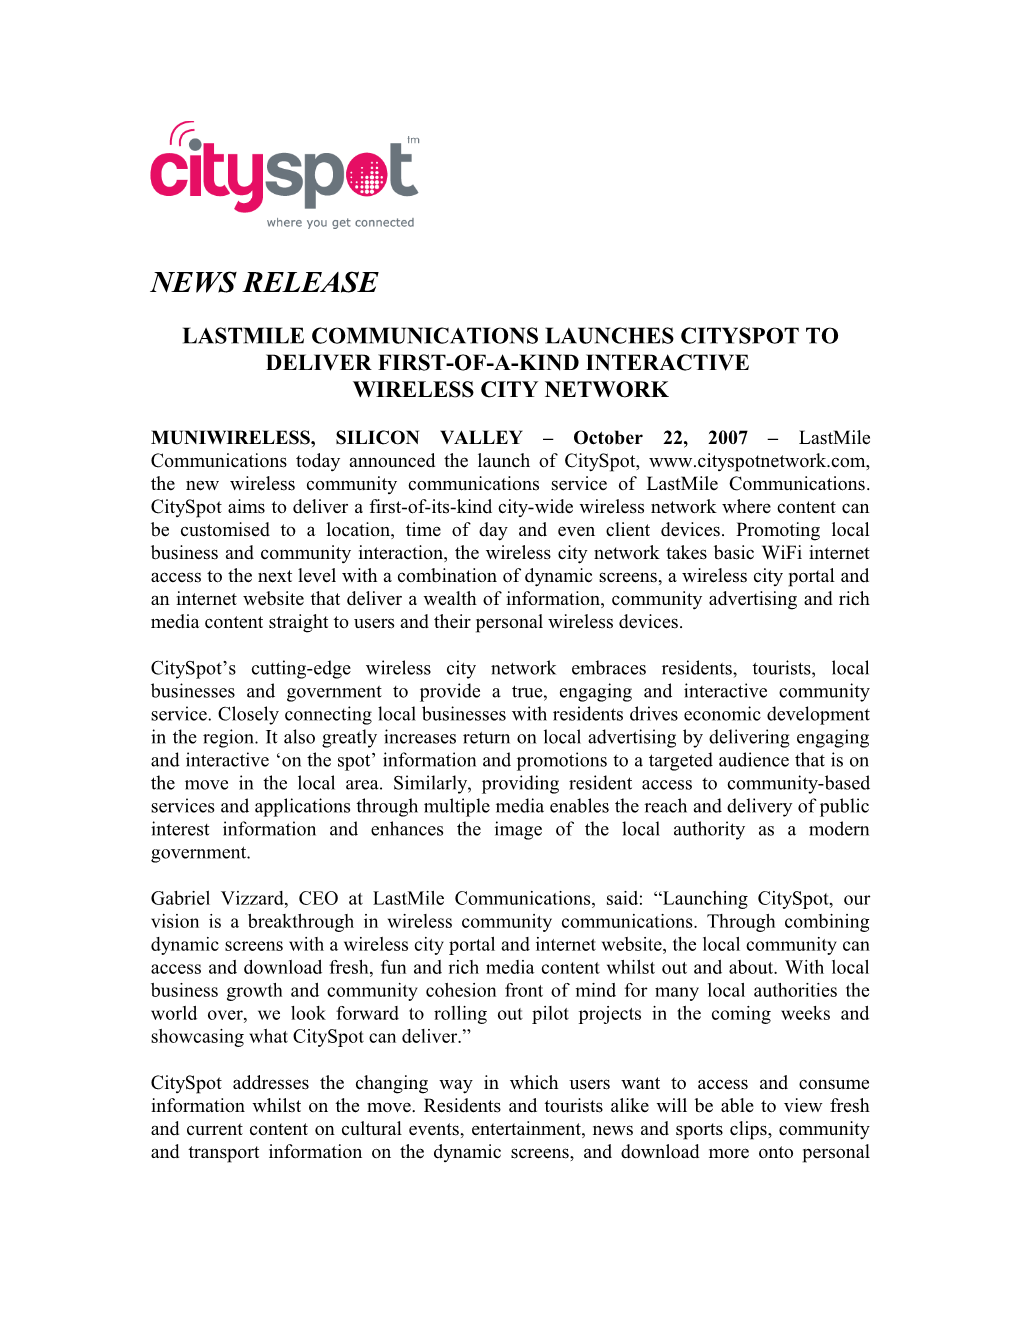 Cityspot Launch Announcement